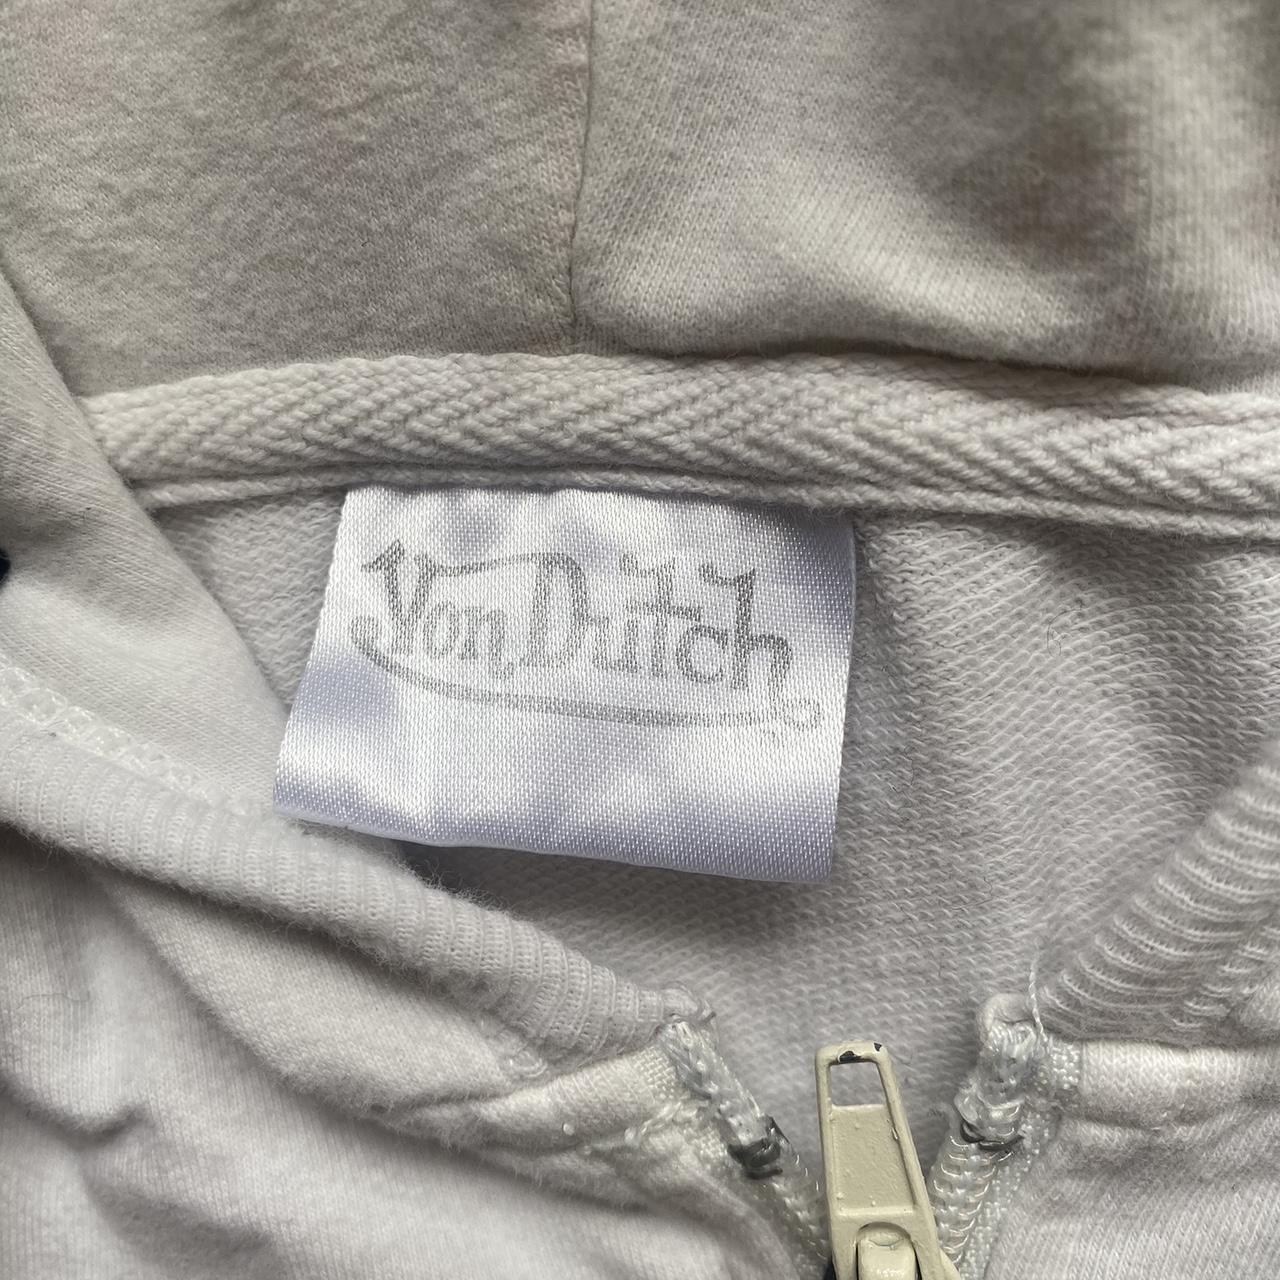 Von Dutch Women's White and Pink Jacket | Depop